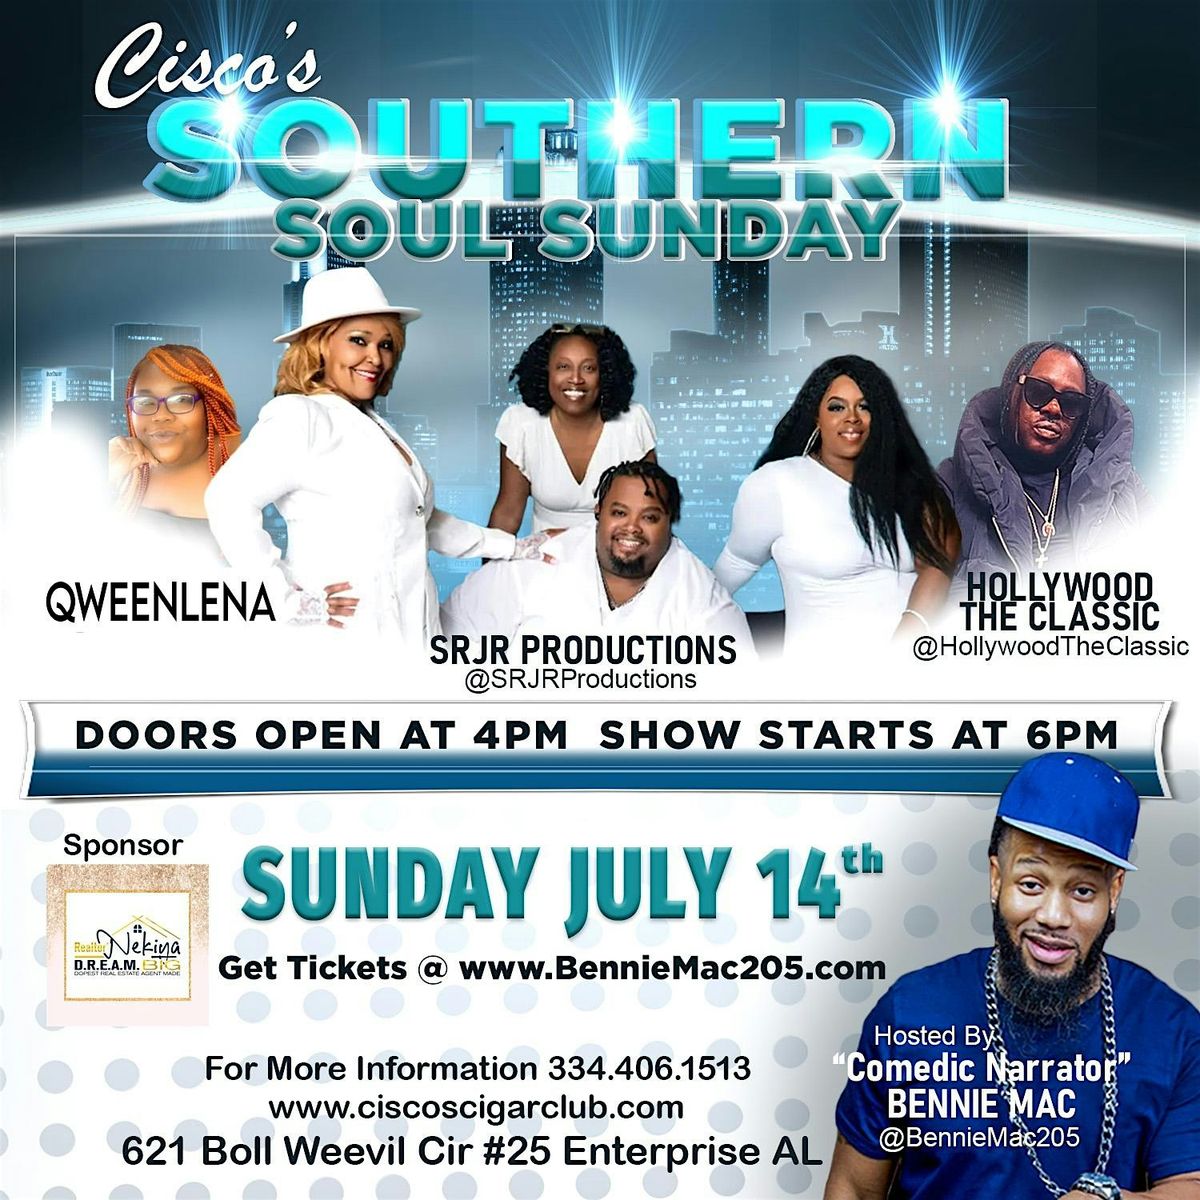 Cisco's Southern Soul Sunday